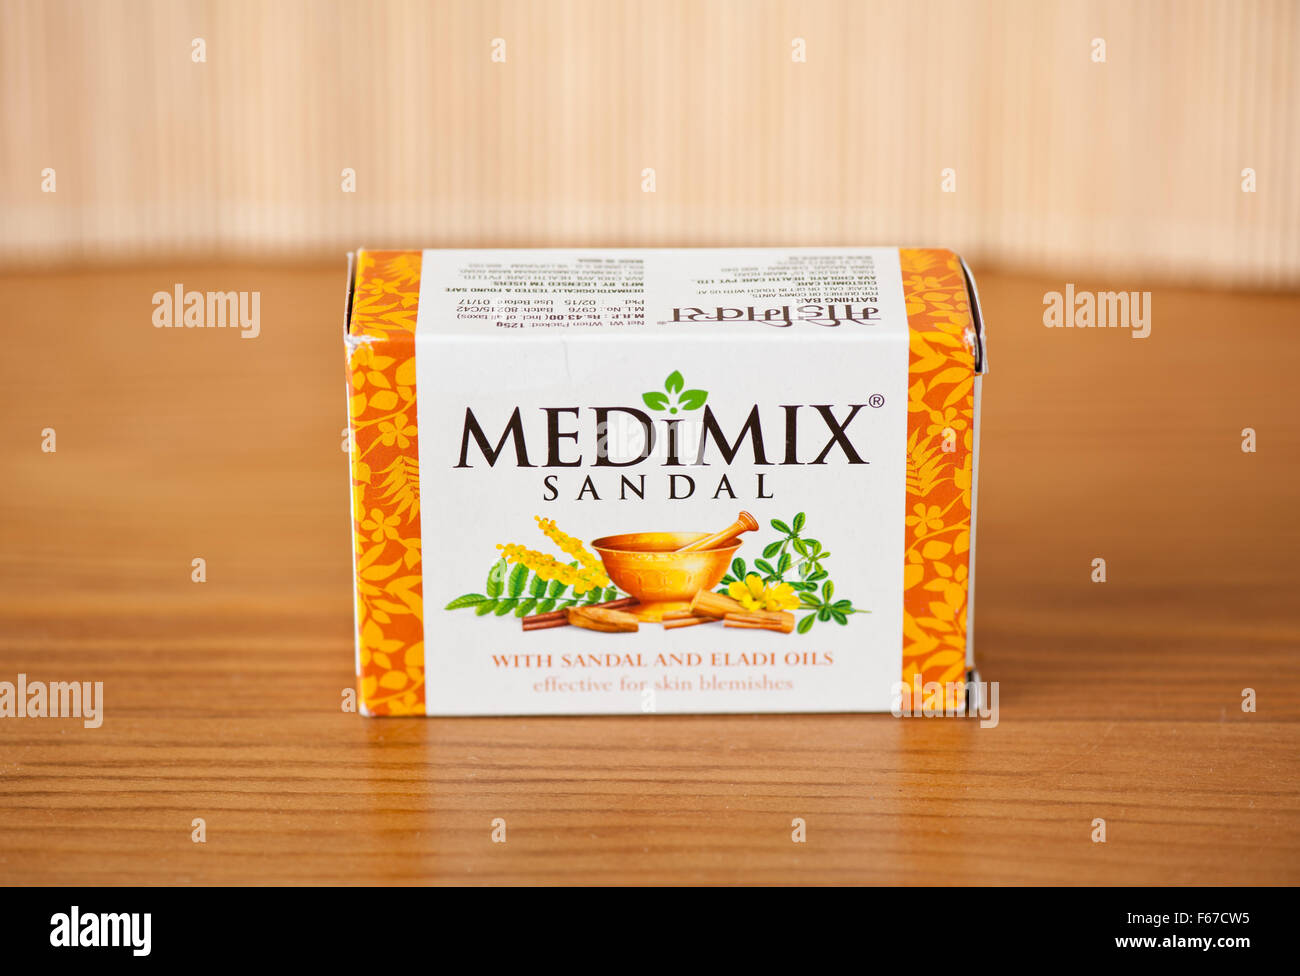 Sandale Medimix savon, cosmétiques faits-main pour la peau avec de l'huiles de santal et d'eladi, efficace pour les imperfections de la peau, 125g pack en carton Banque D'Images